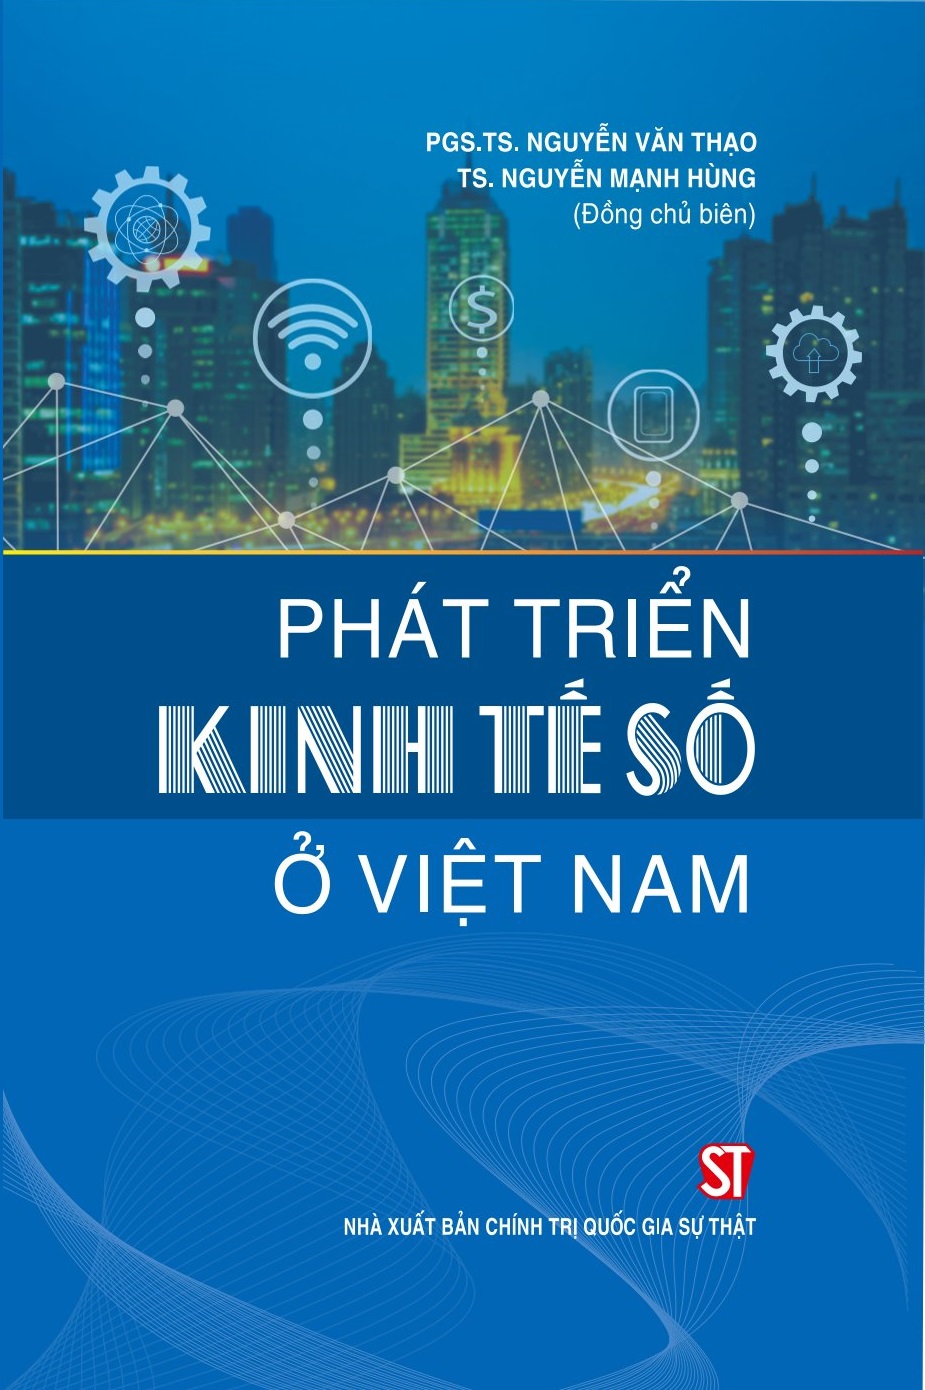 Phát triển kinh tế số ở Việt Nam